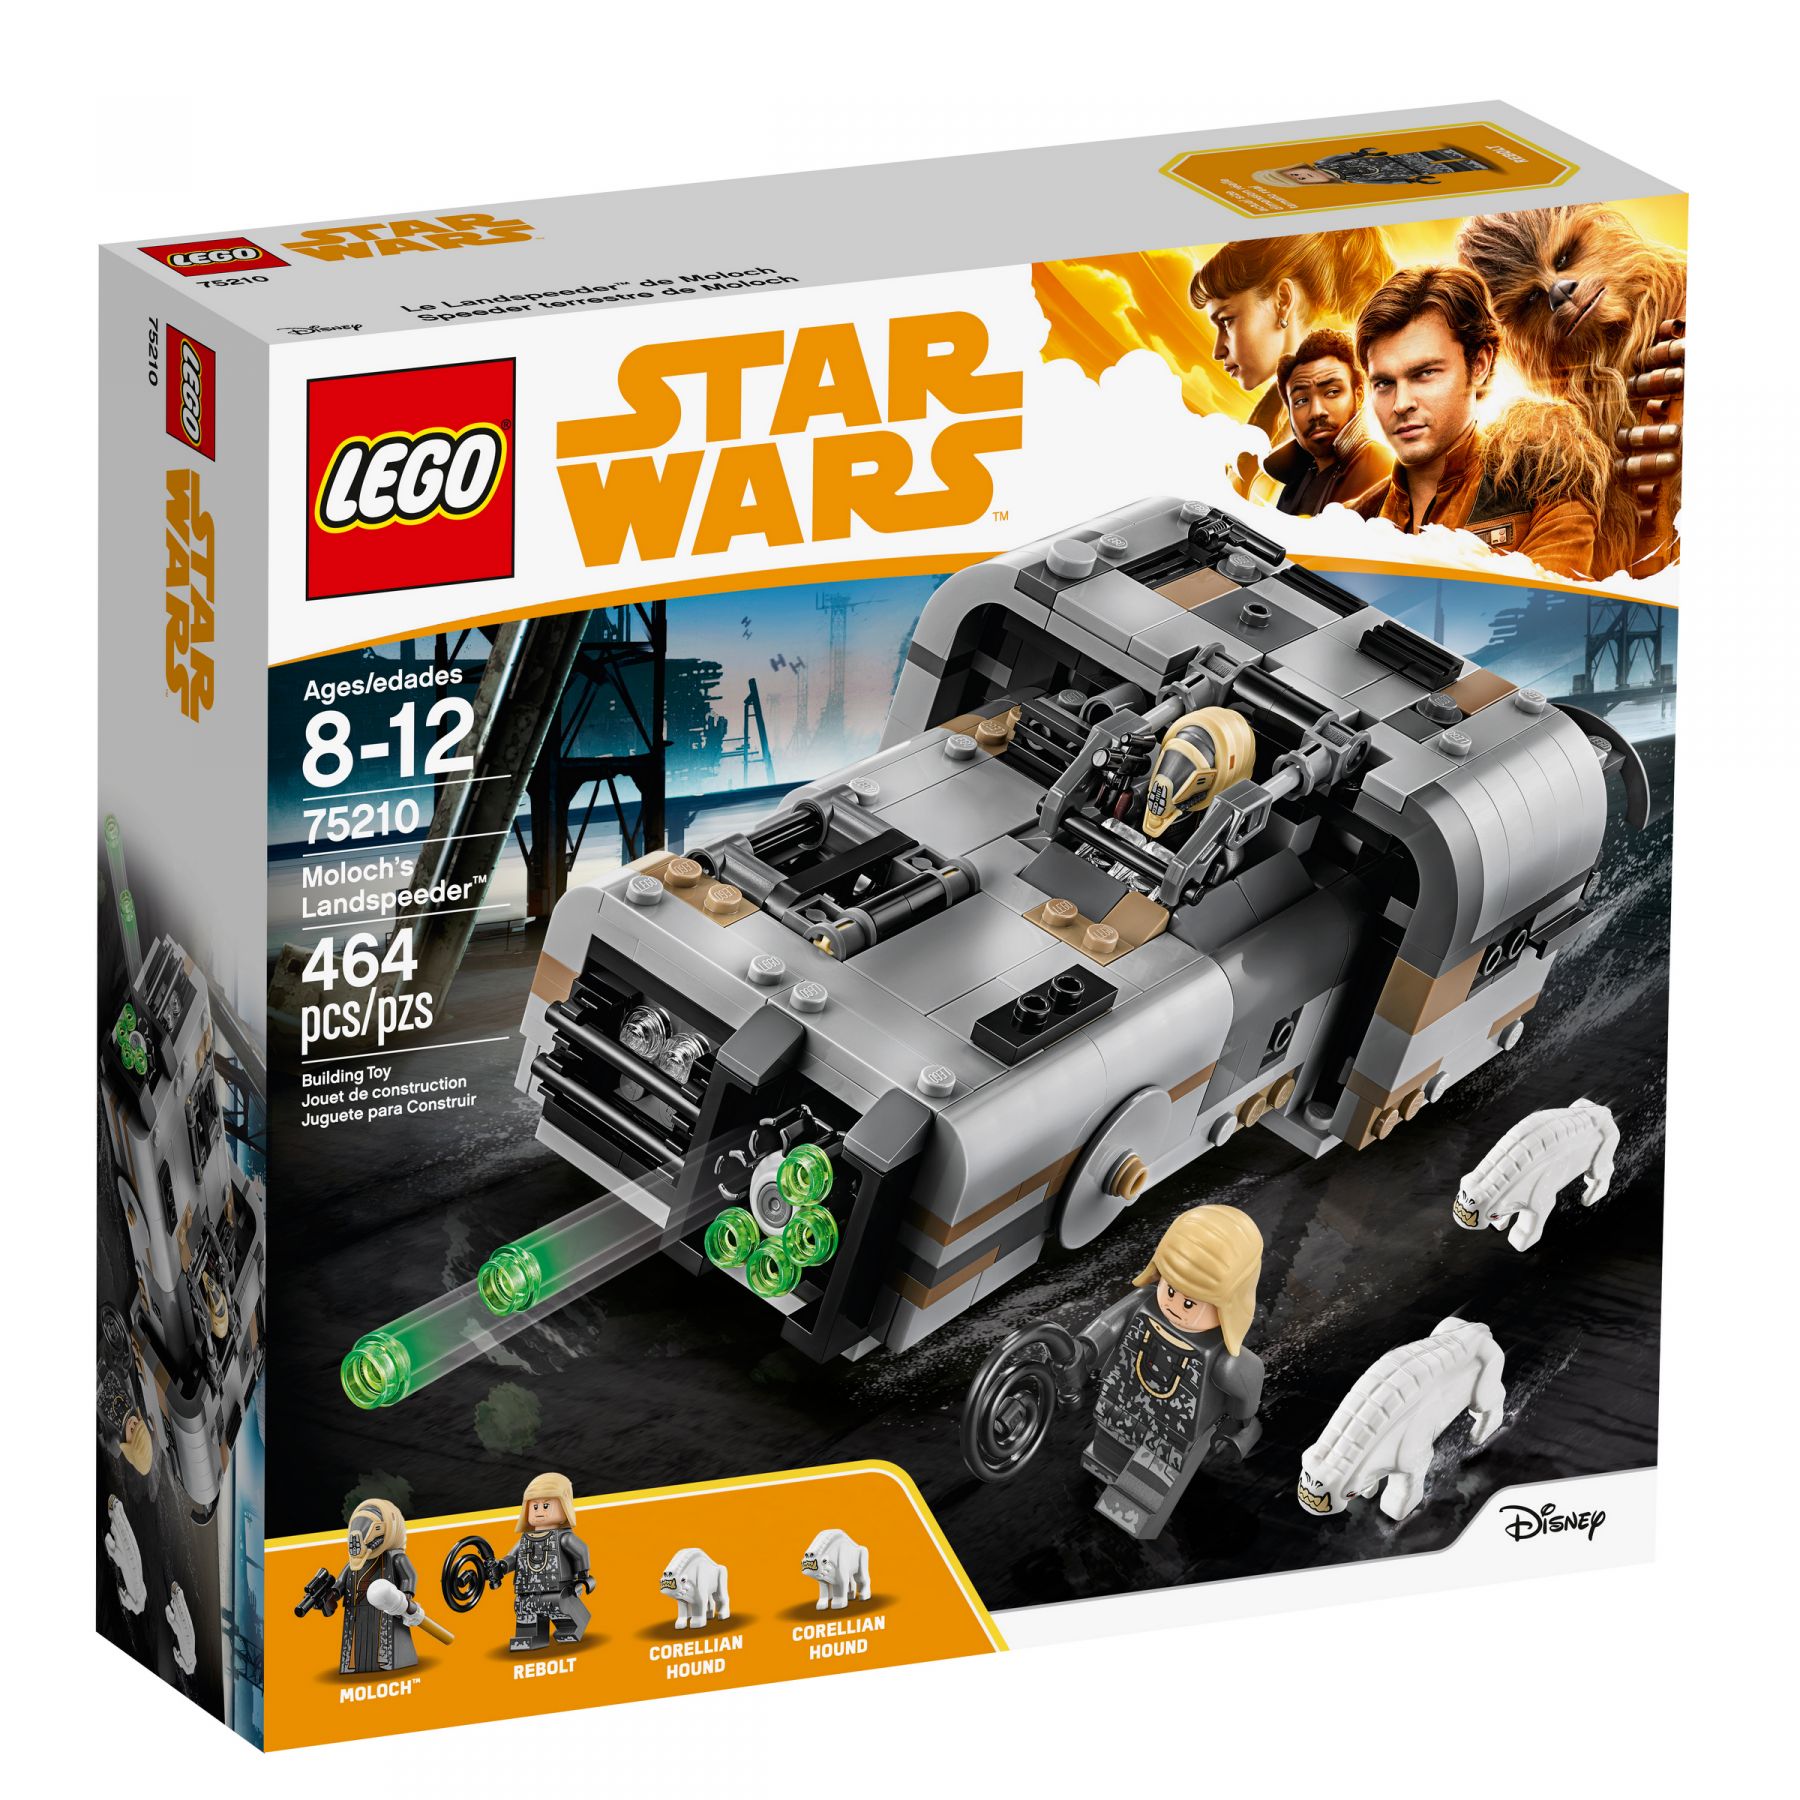 LEGO Star Wars 75210 Moloch's Landspeeder™ LEGO_75210_alt1.jpg